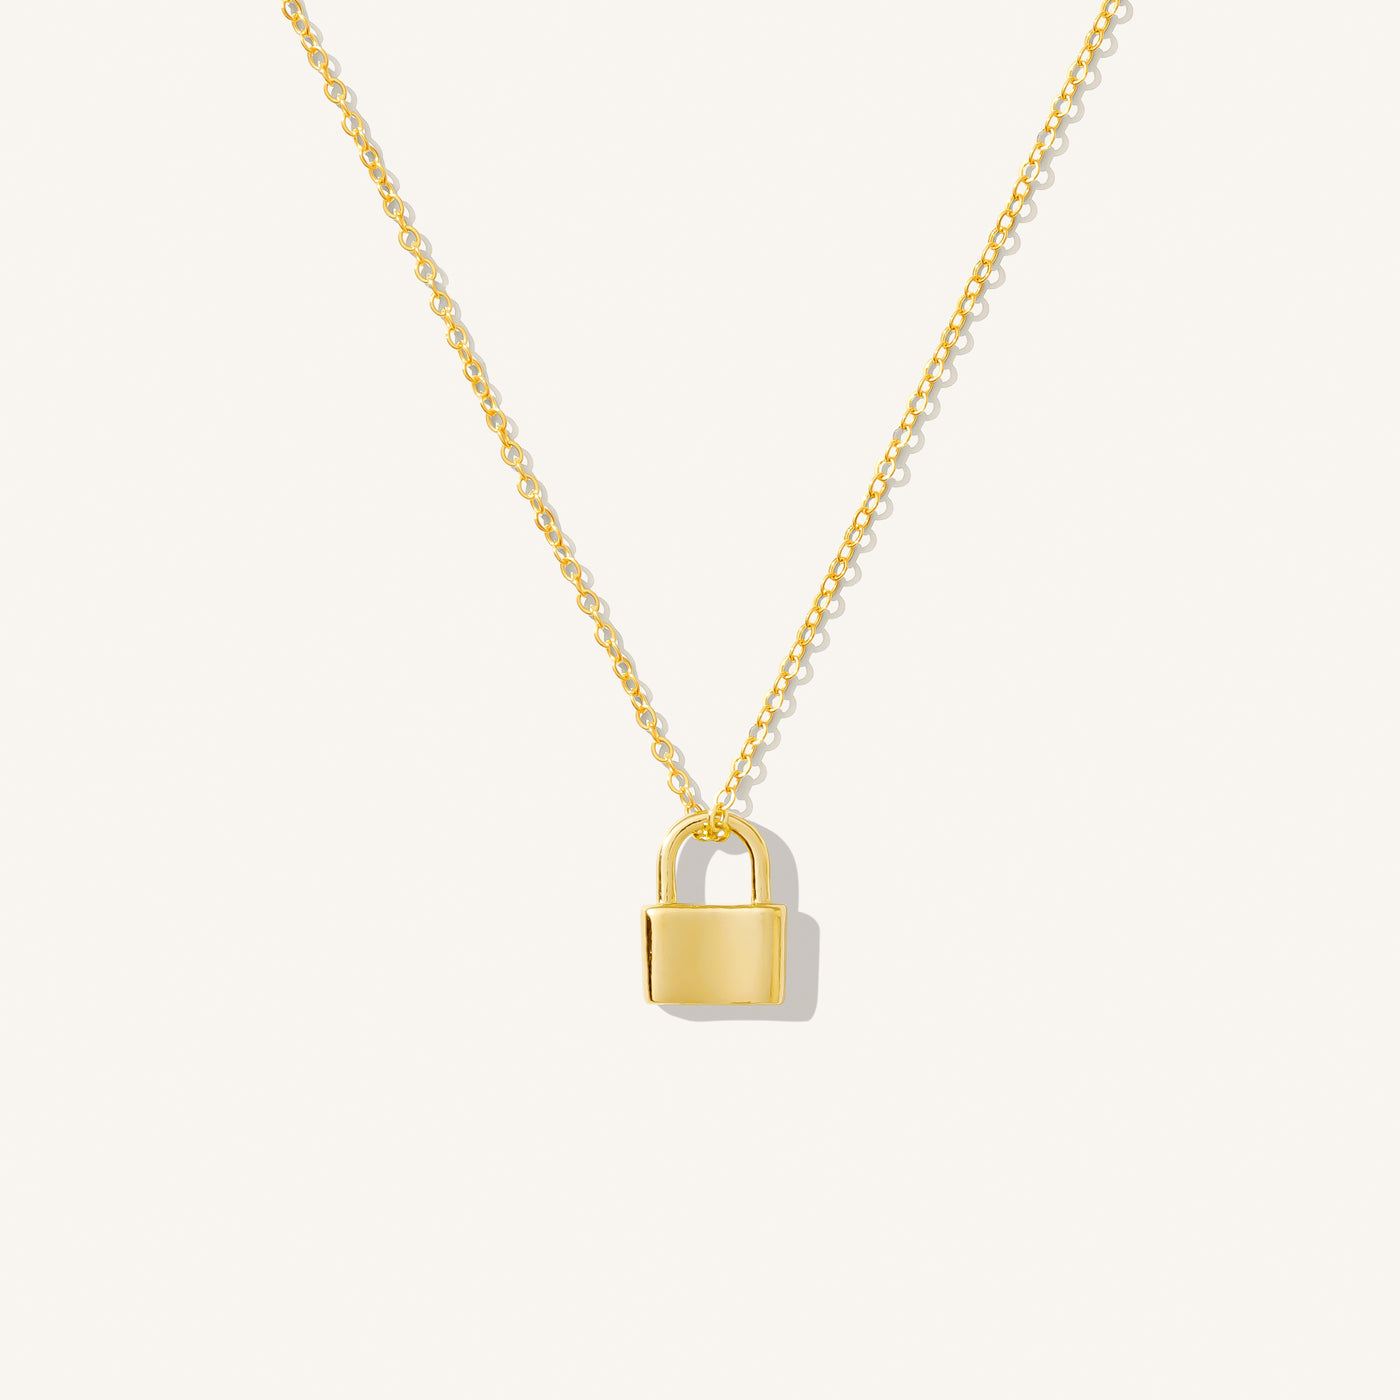 Tiny Lock Necklace | Simple & Dainty Jewelry